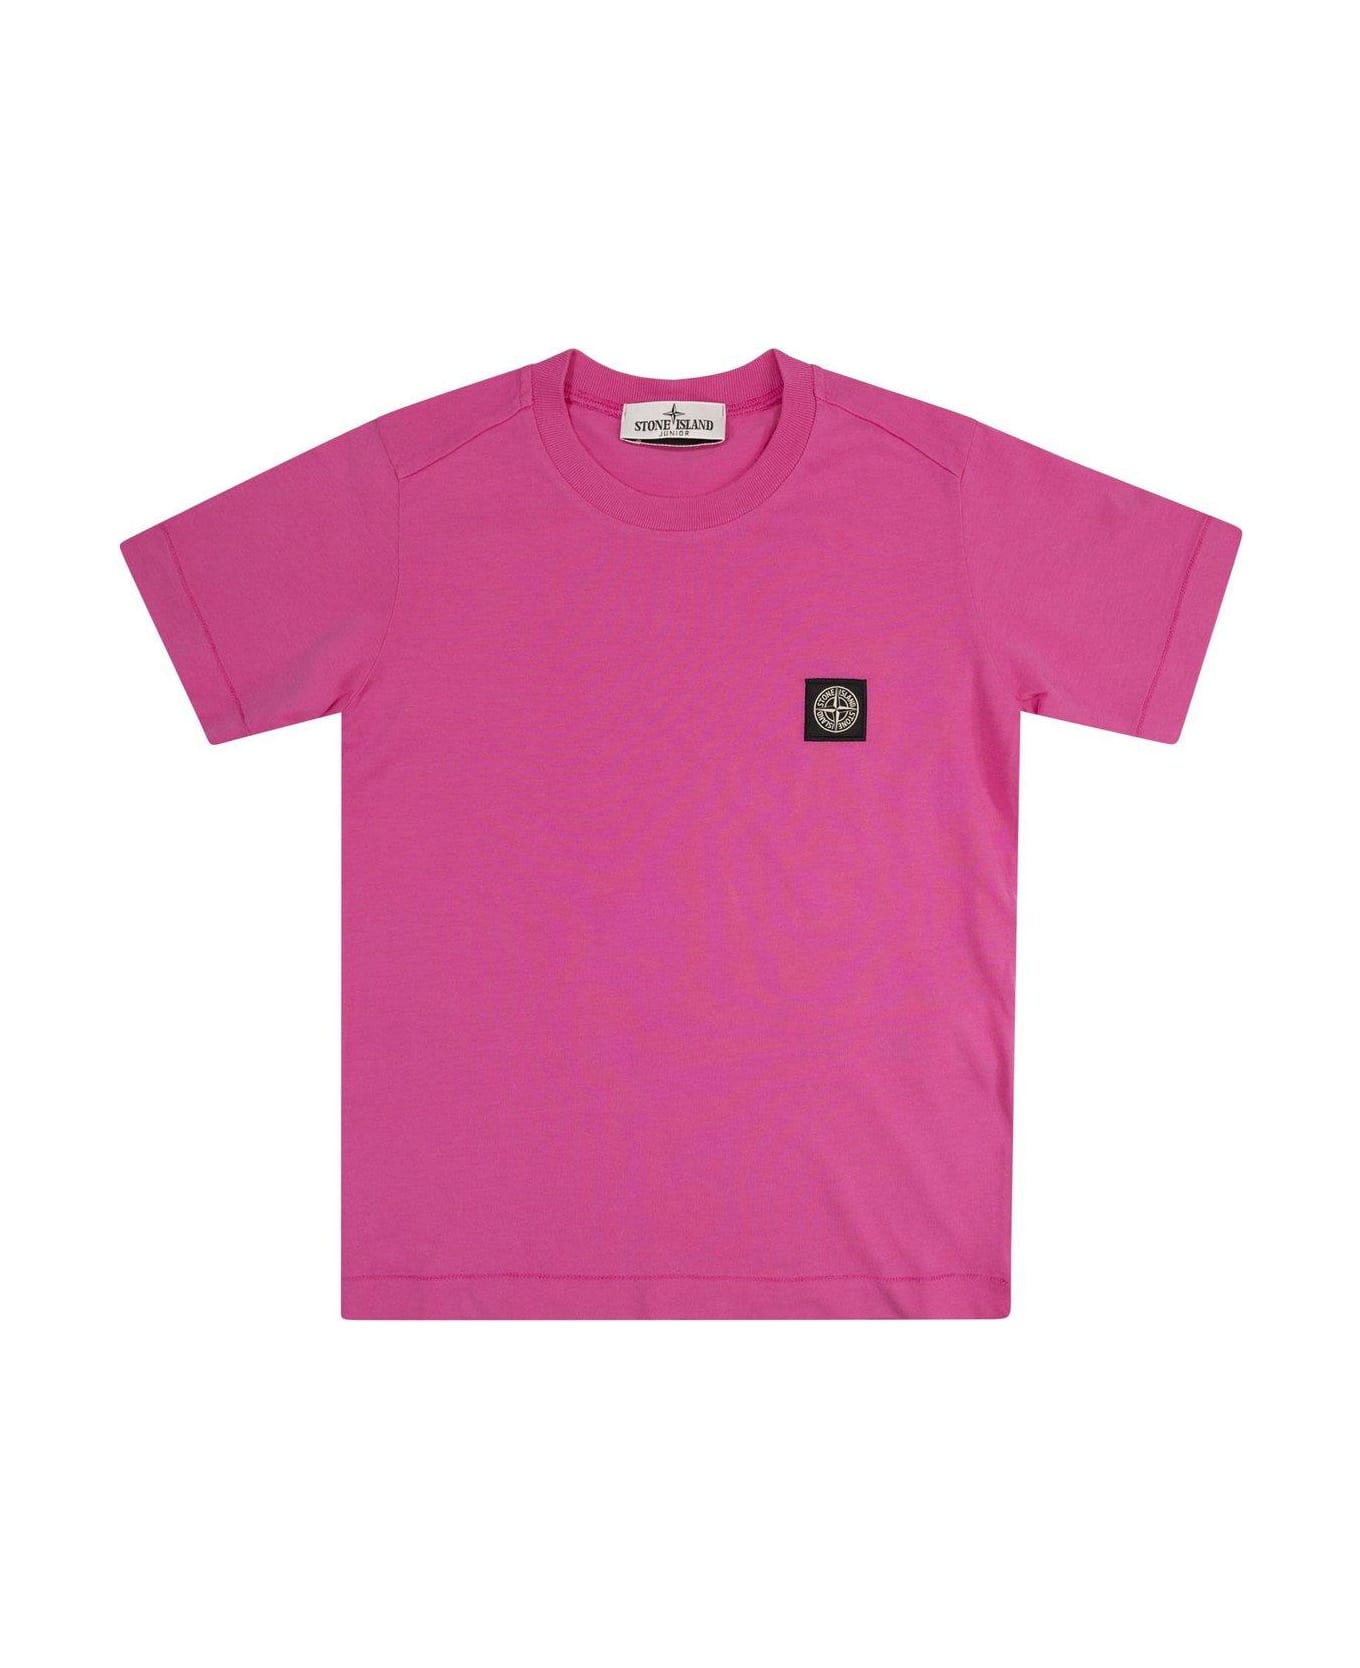 Stone Island Junior Compass-patch Crewneck T-shirt - Fucsia